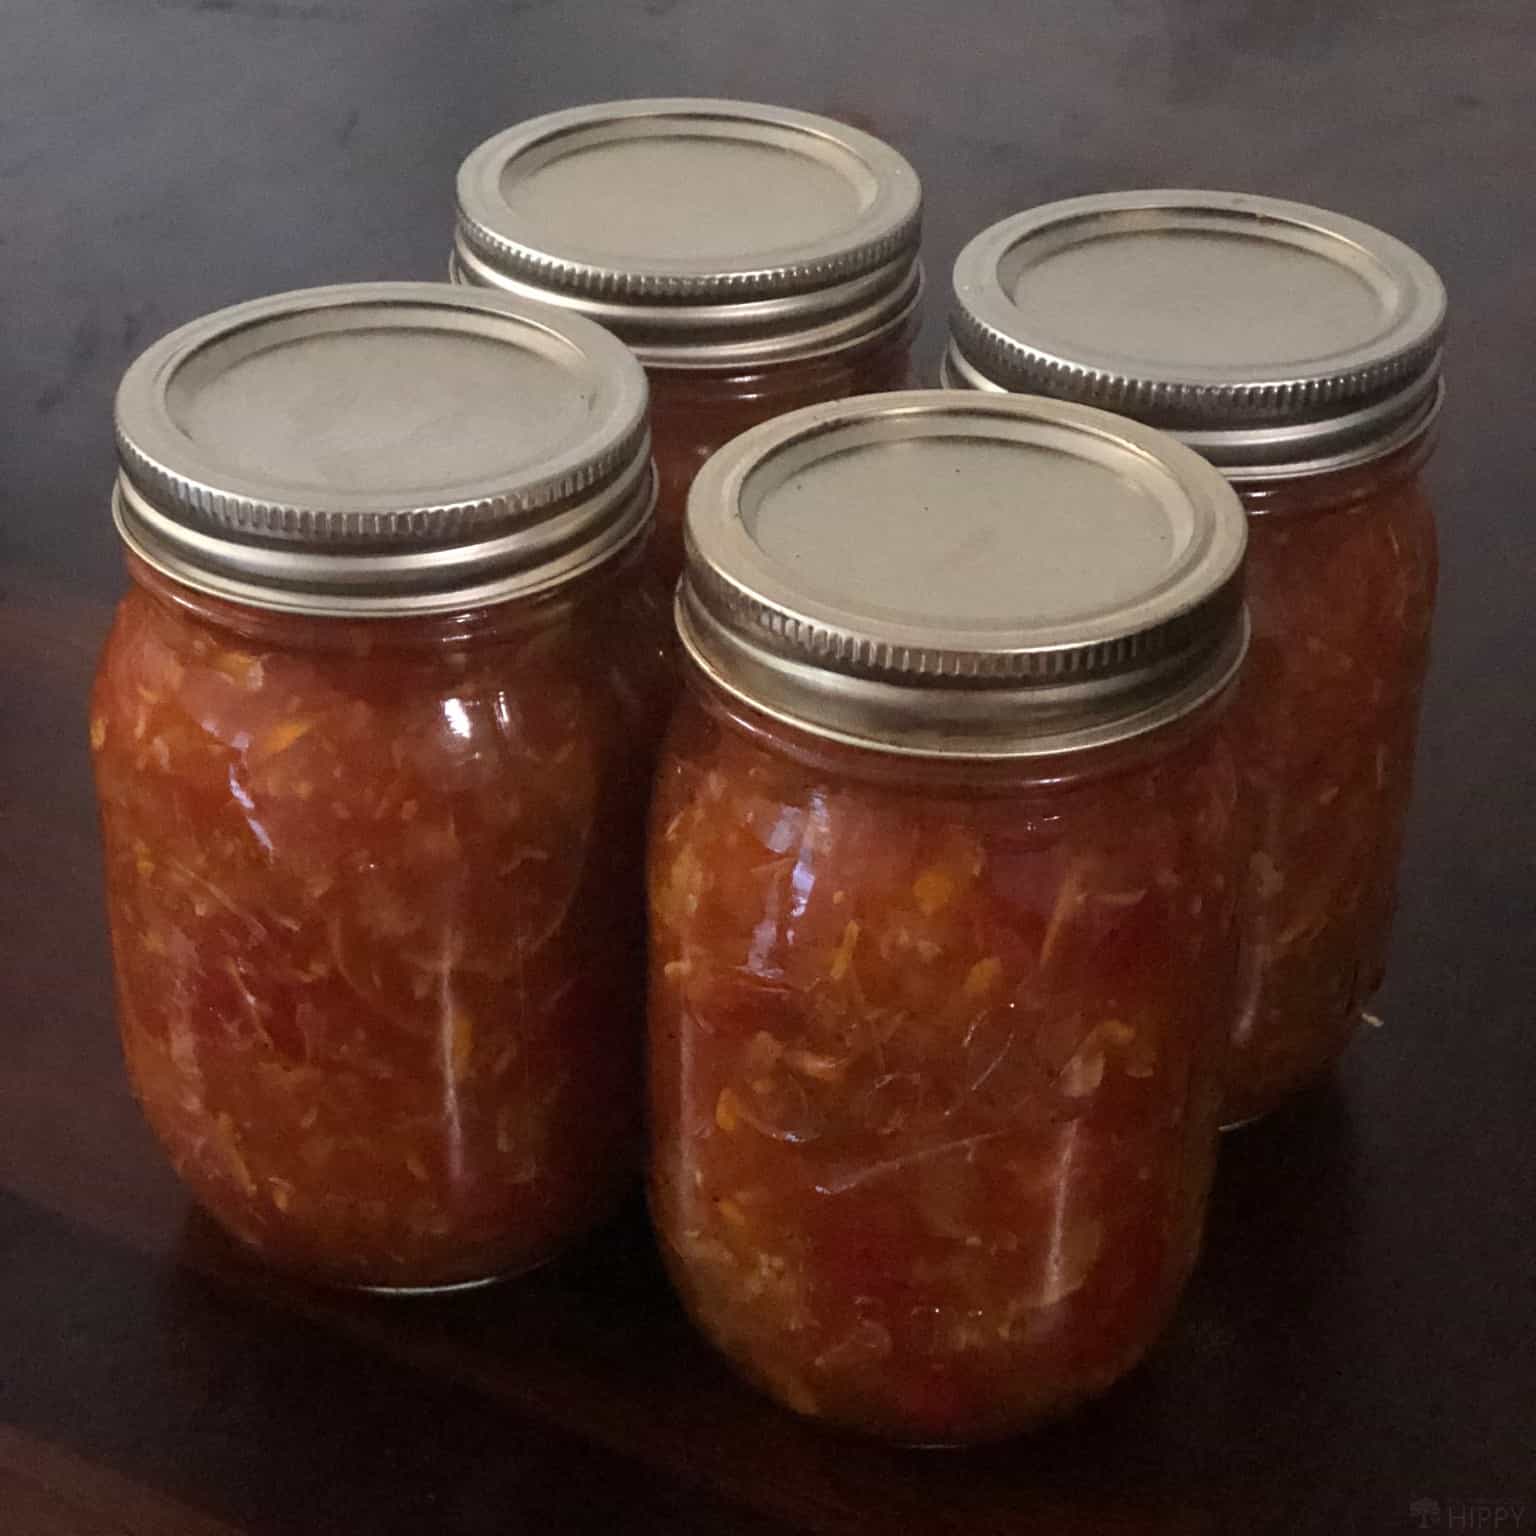 canned zucchini salsa